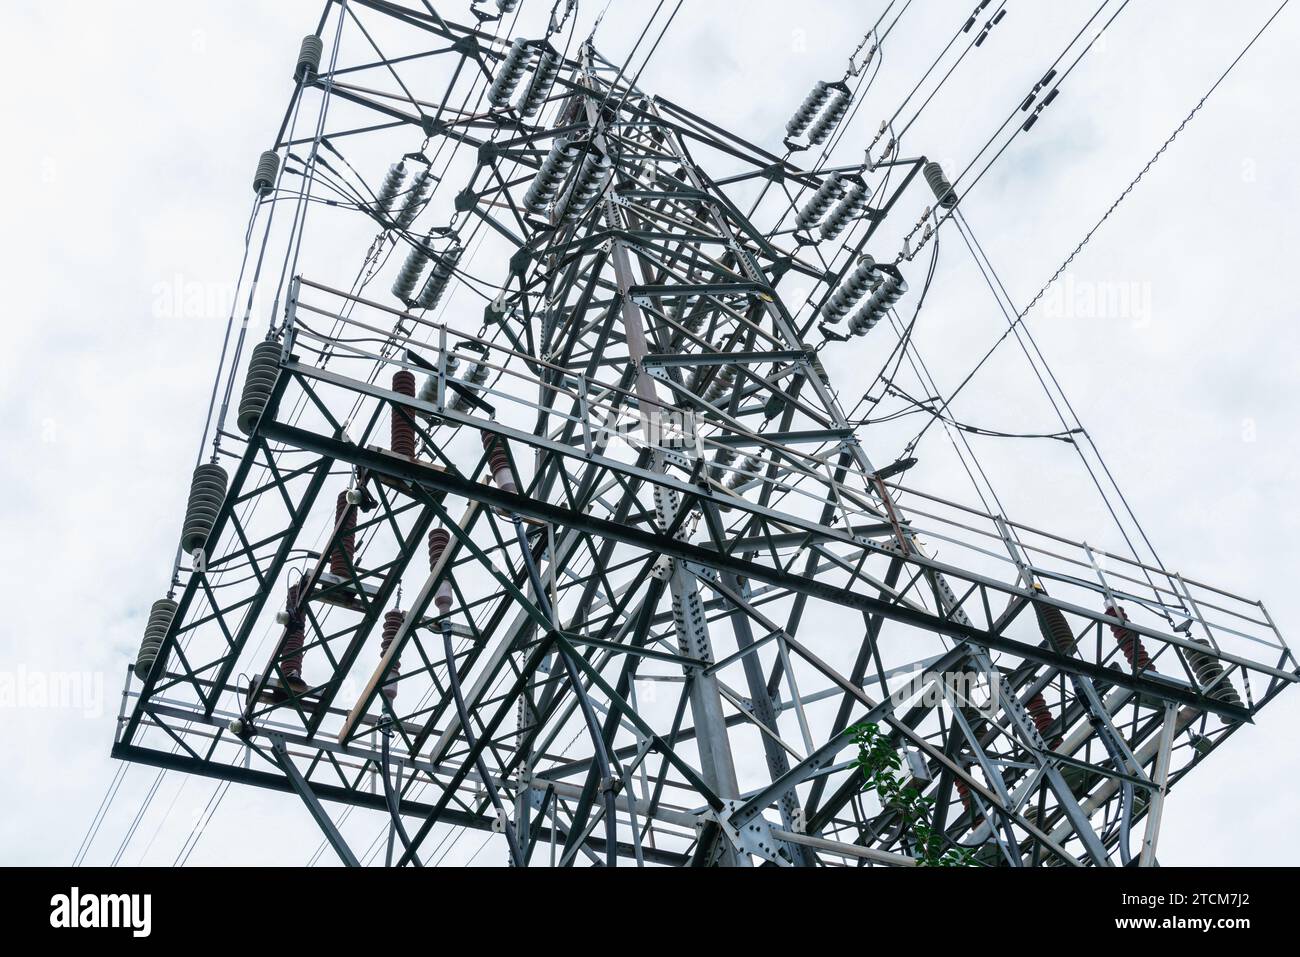 Un'immagine di un palo elettrico con un'alta struttura metallica con vari fili elettrici che lo circondano Foto Stock